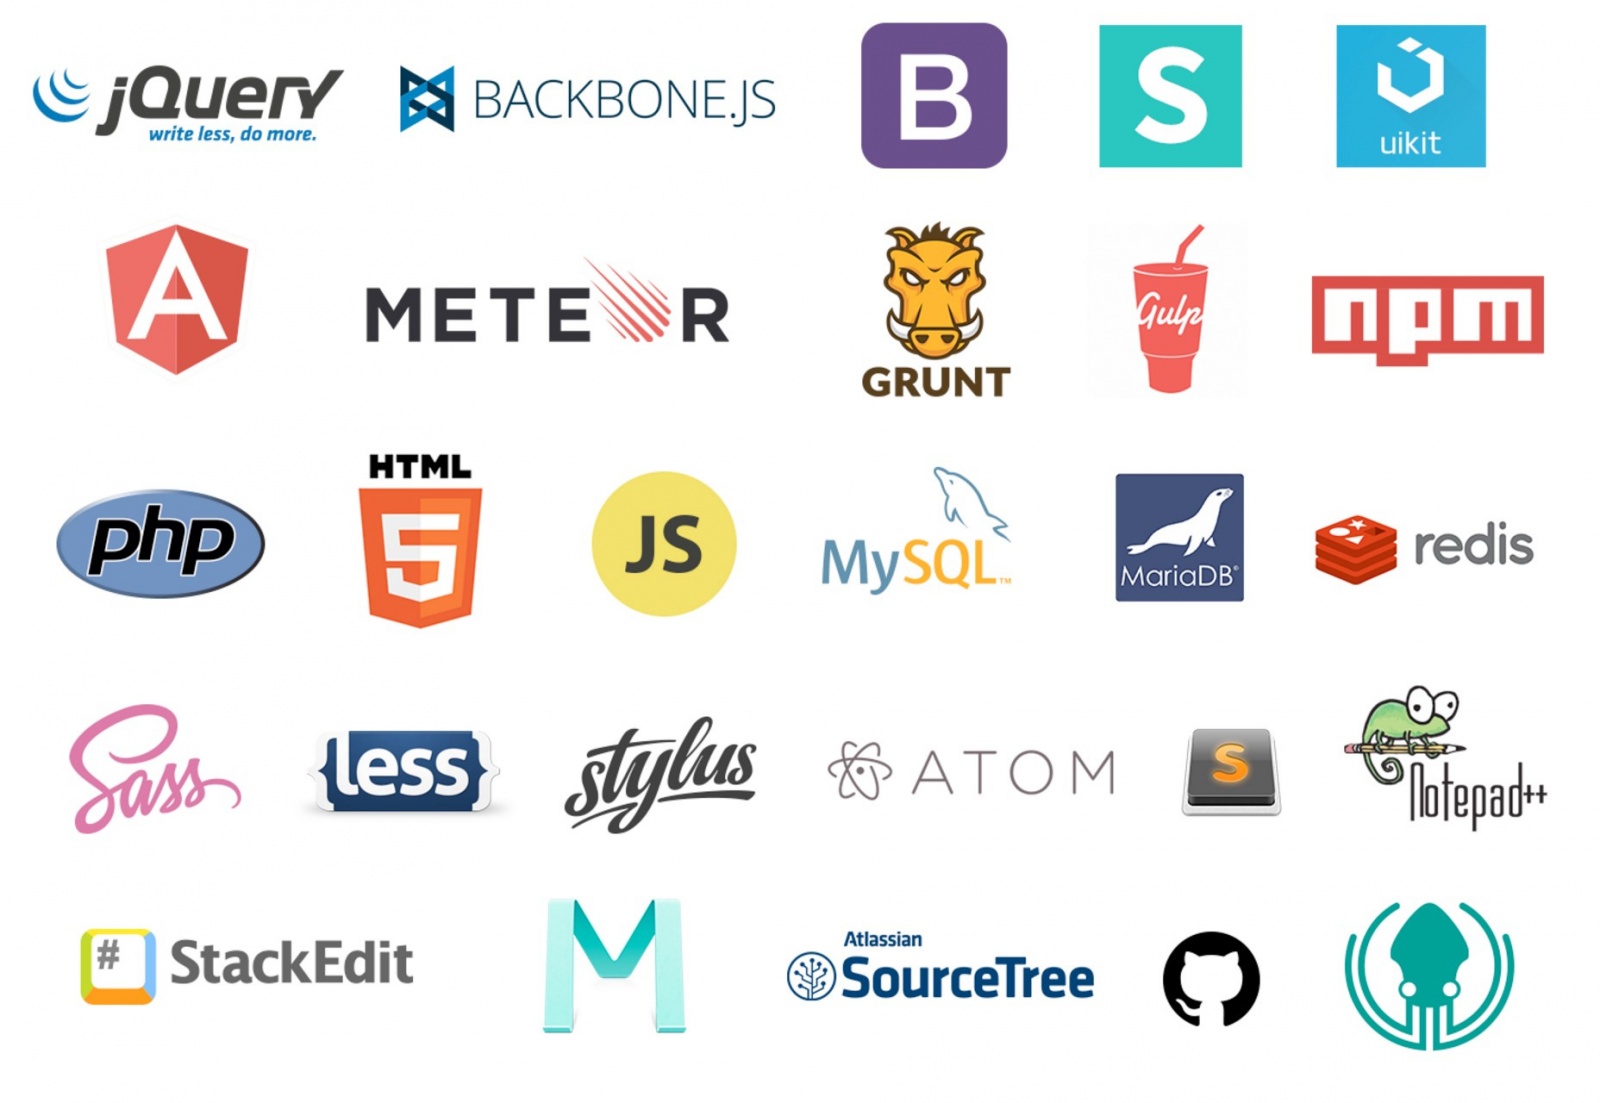 67 полезных инструментов, библиотек и ресурсов для экономии времени веб-разработчиков - 1